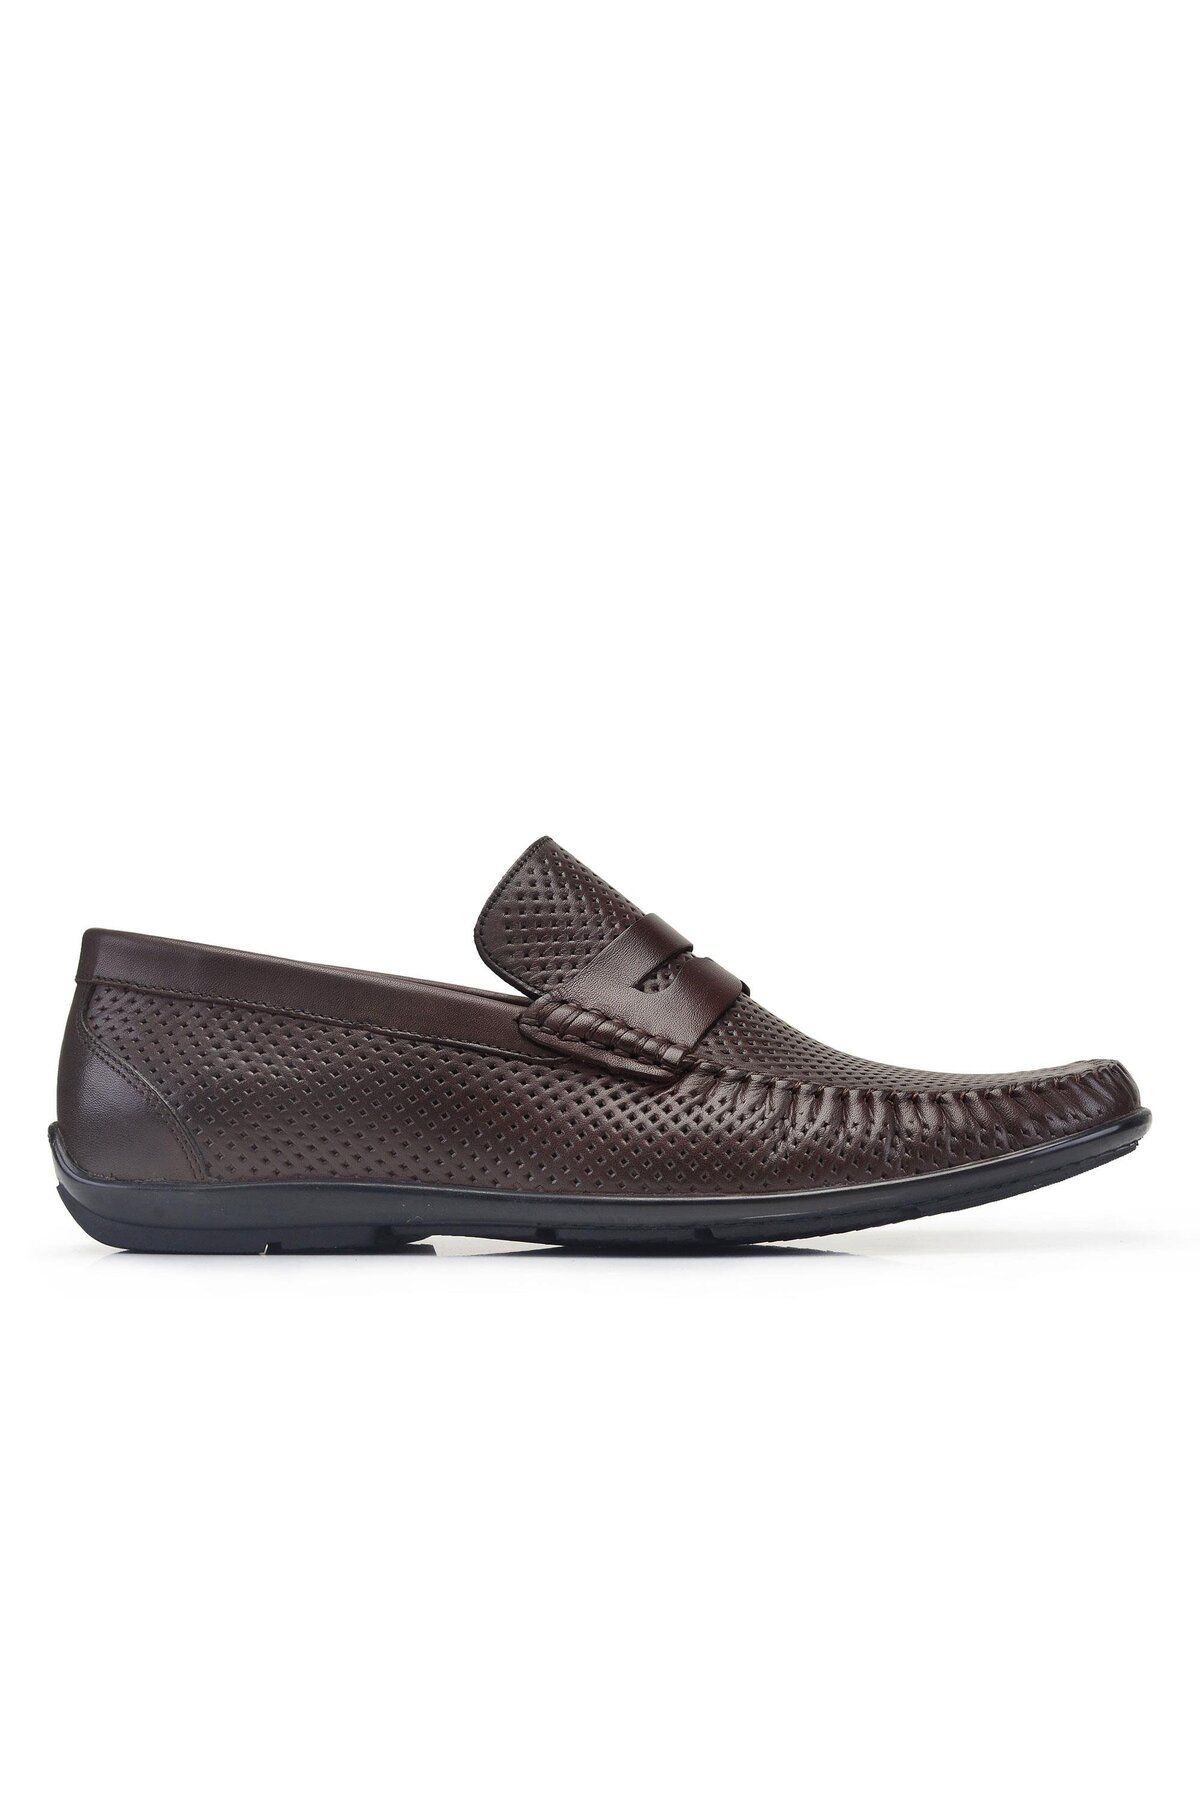 Nevzat Onay Kahverengi Yazlık Loafer Erkek Ayakkabı -32052-